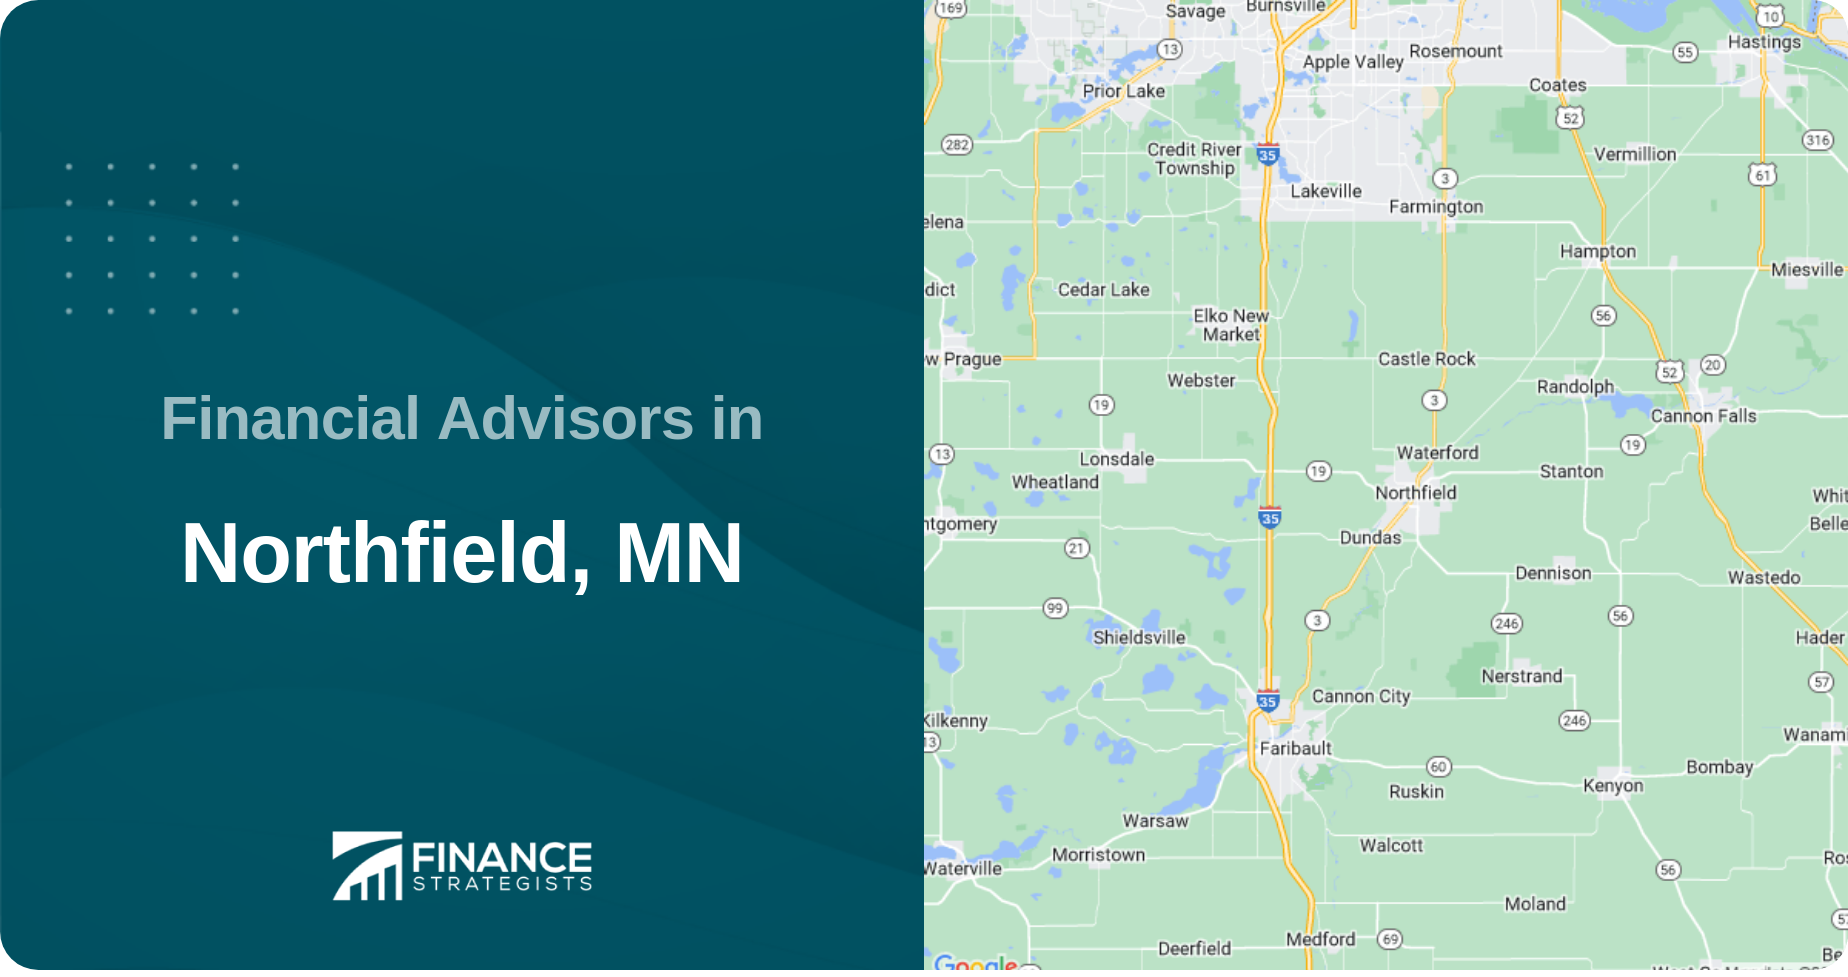 Financial Advisors in Northfield, MN